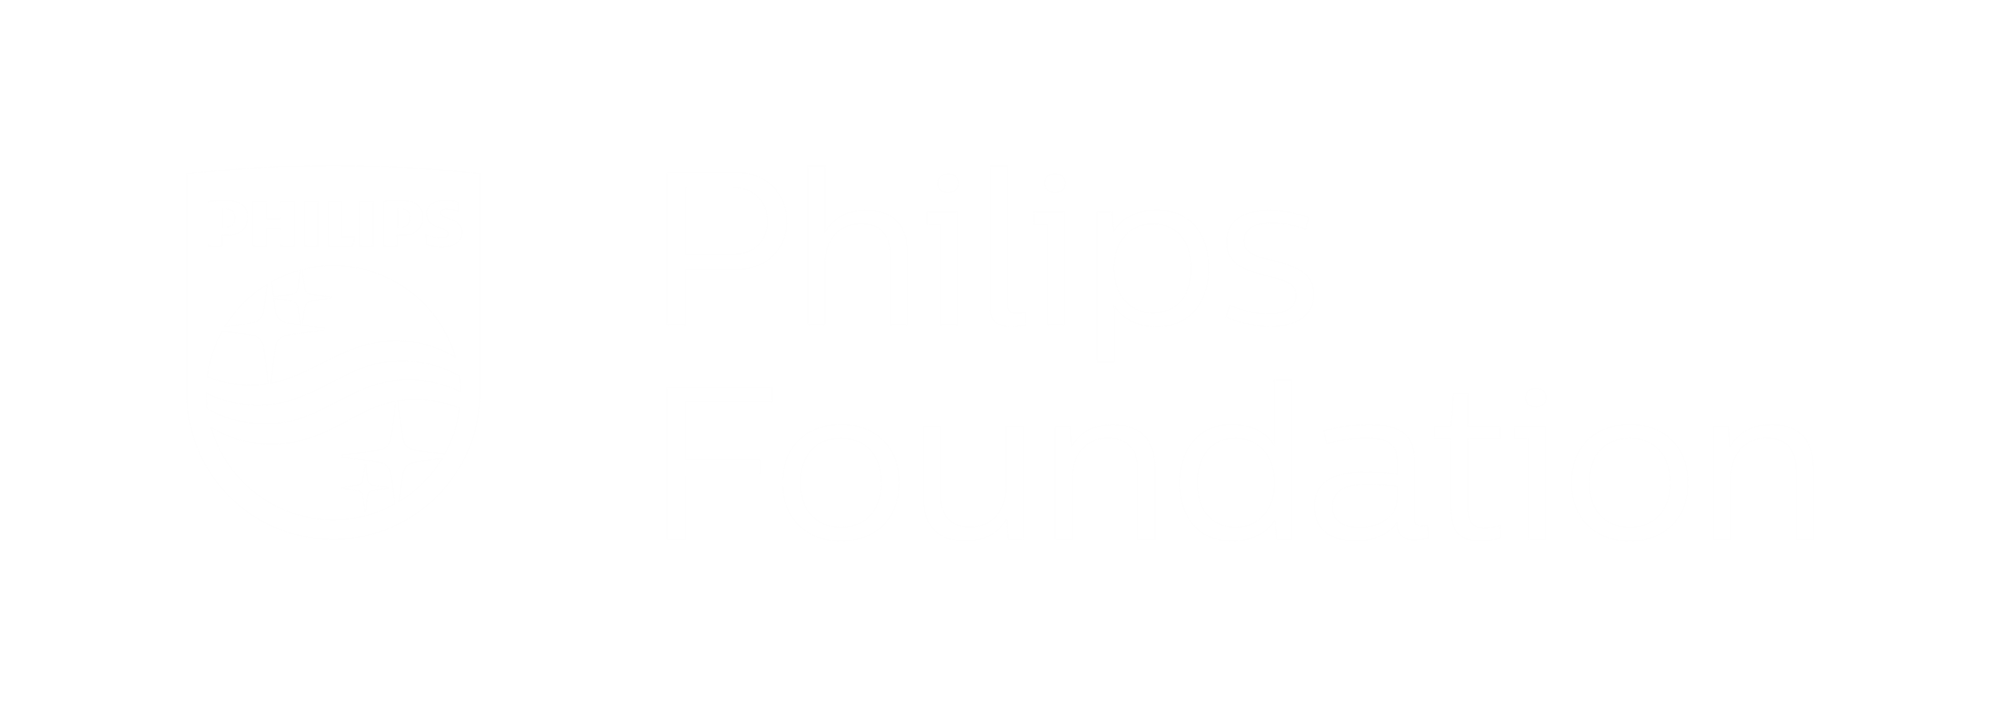 Philips Foundation Image